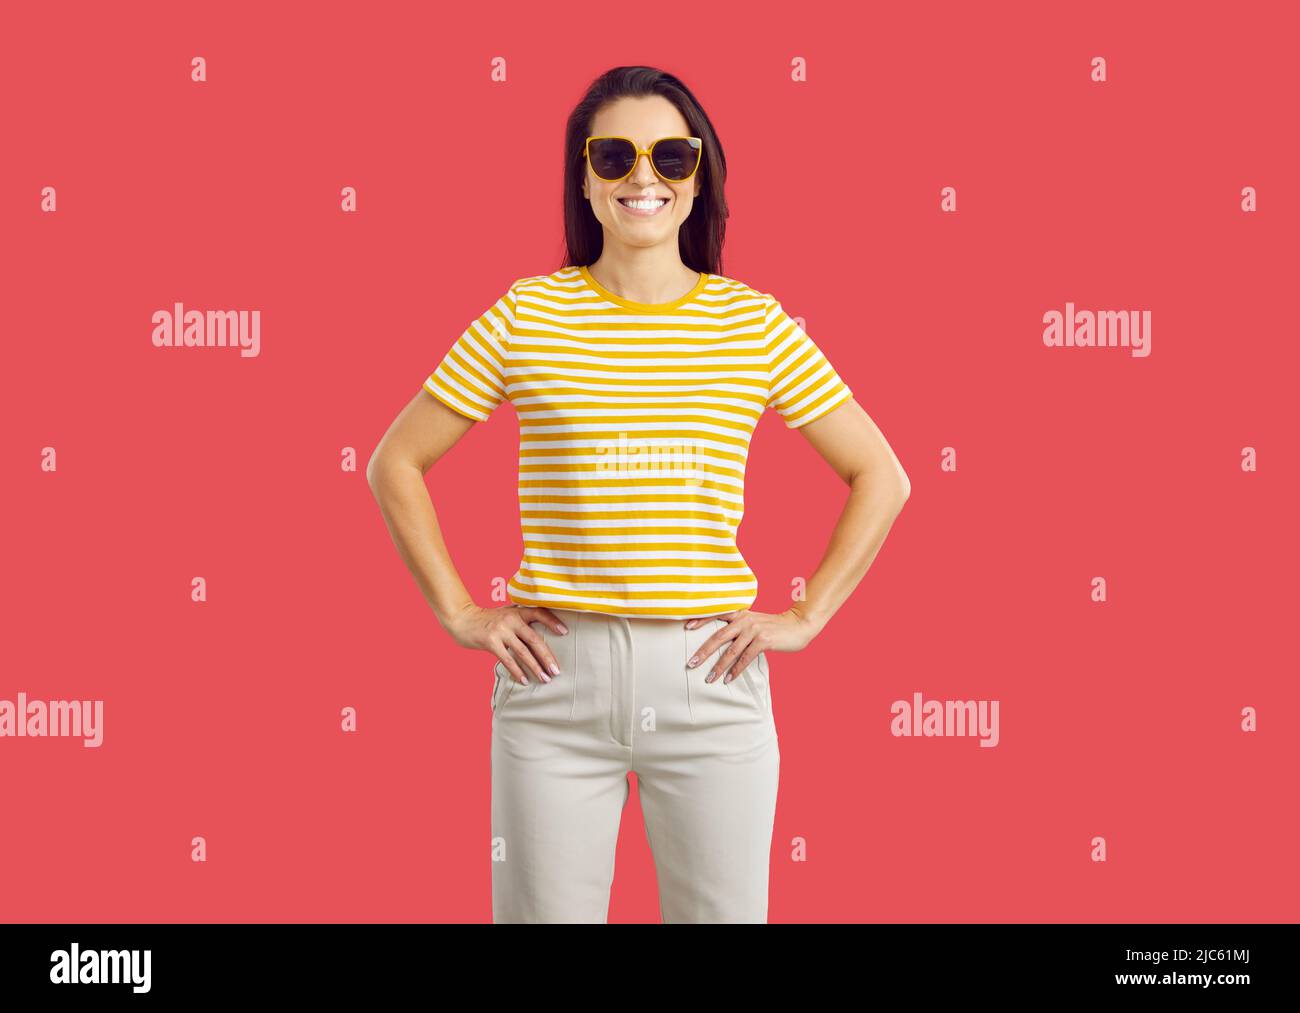 Fröhliche lächelnde Frau in lässigem Outfit und Sonnenbrille, die isoliert auf rotem Hintergrund steht Stockfoto